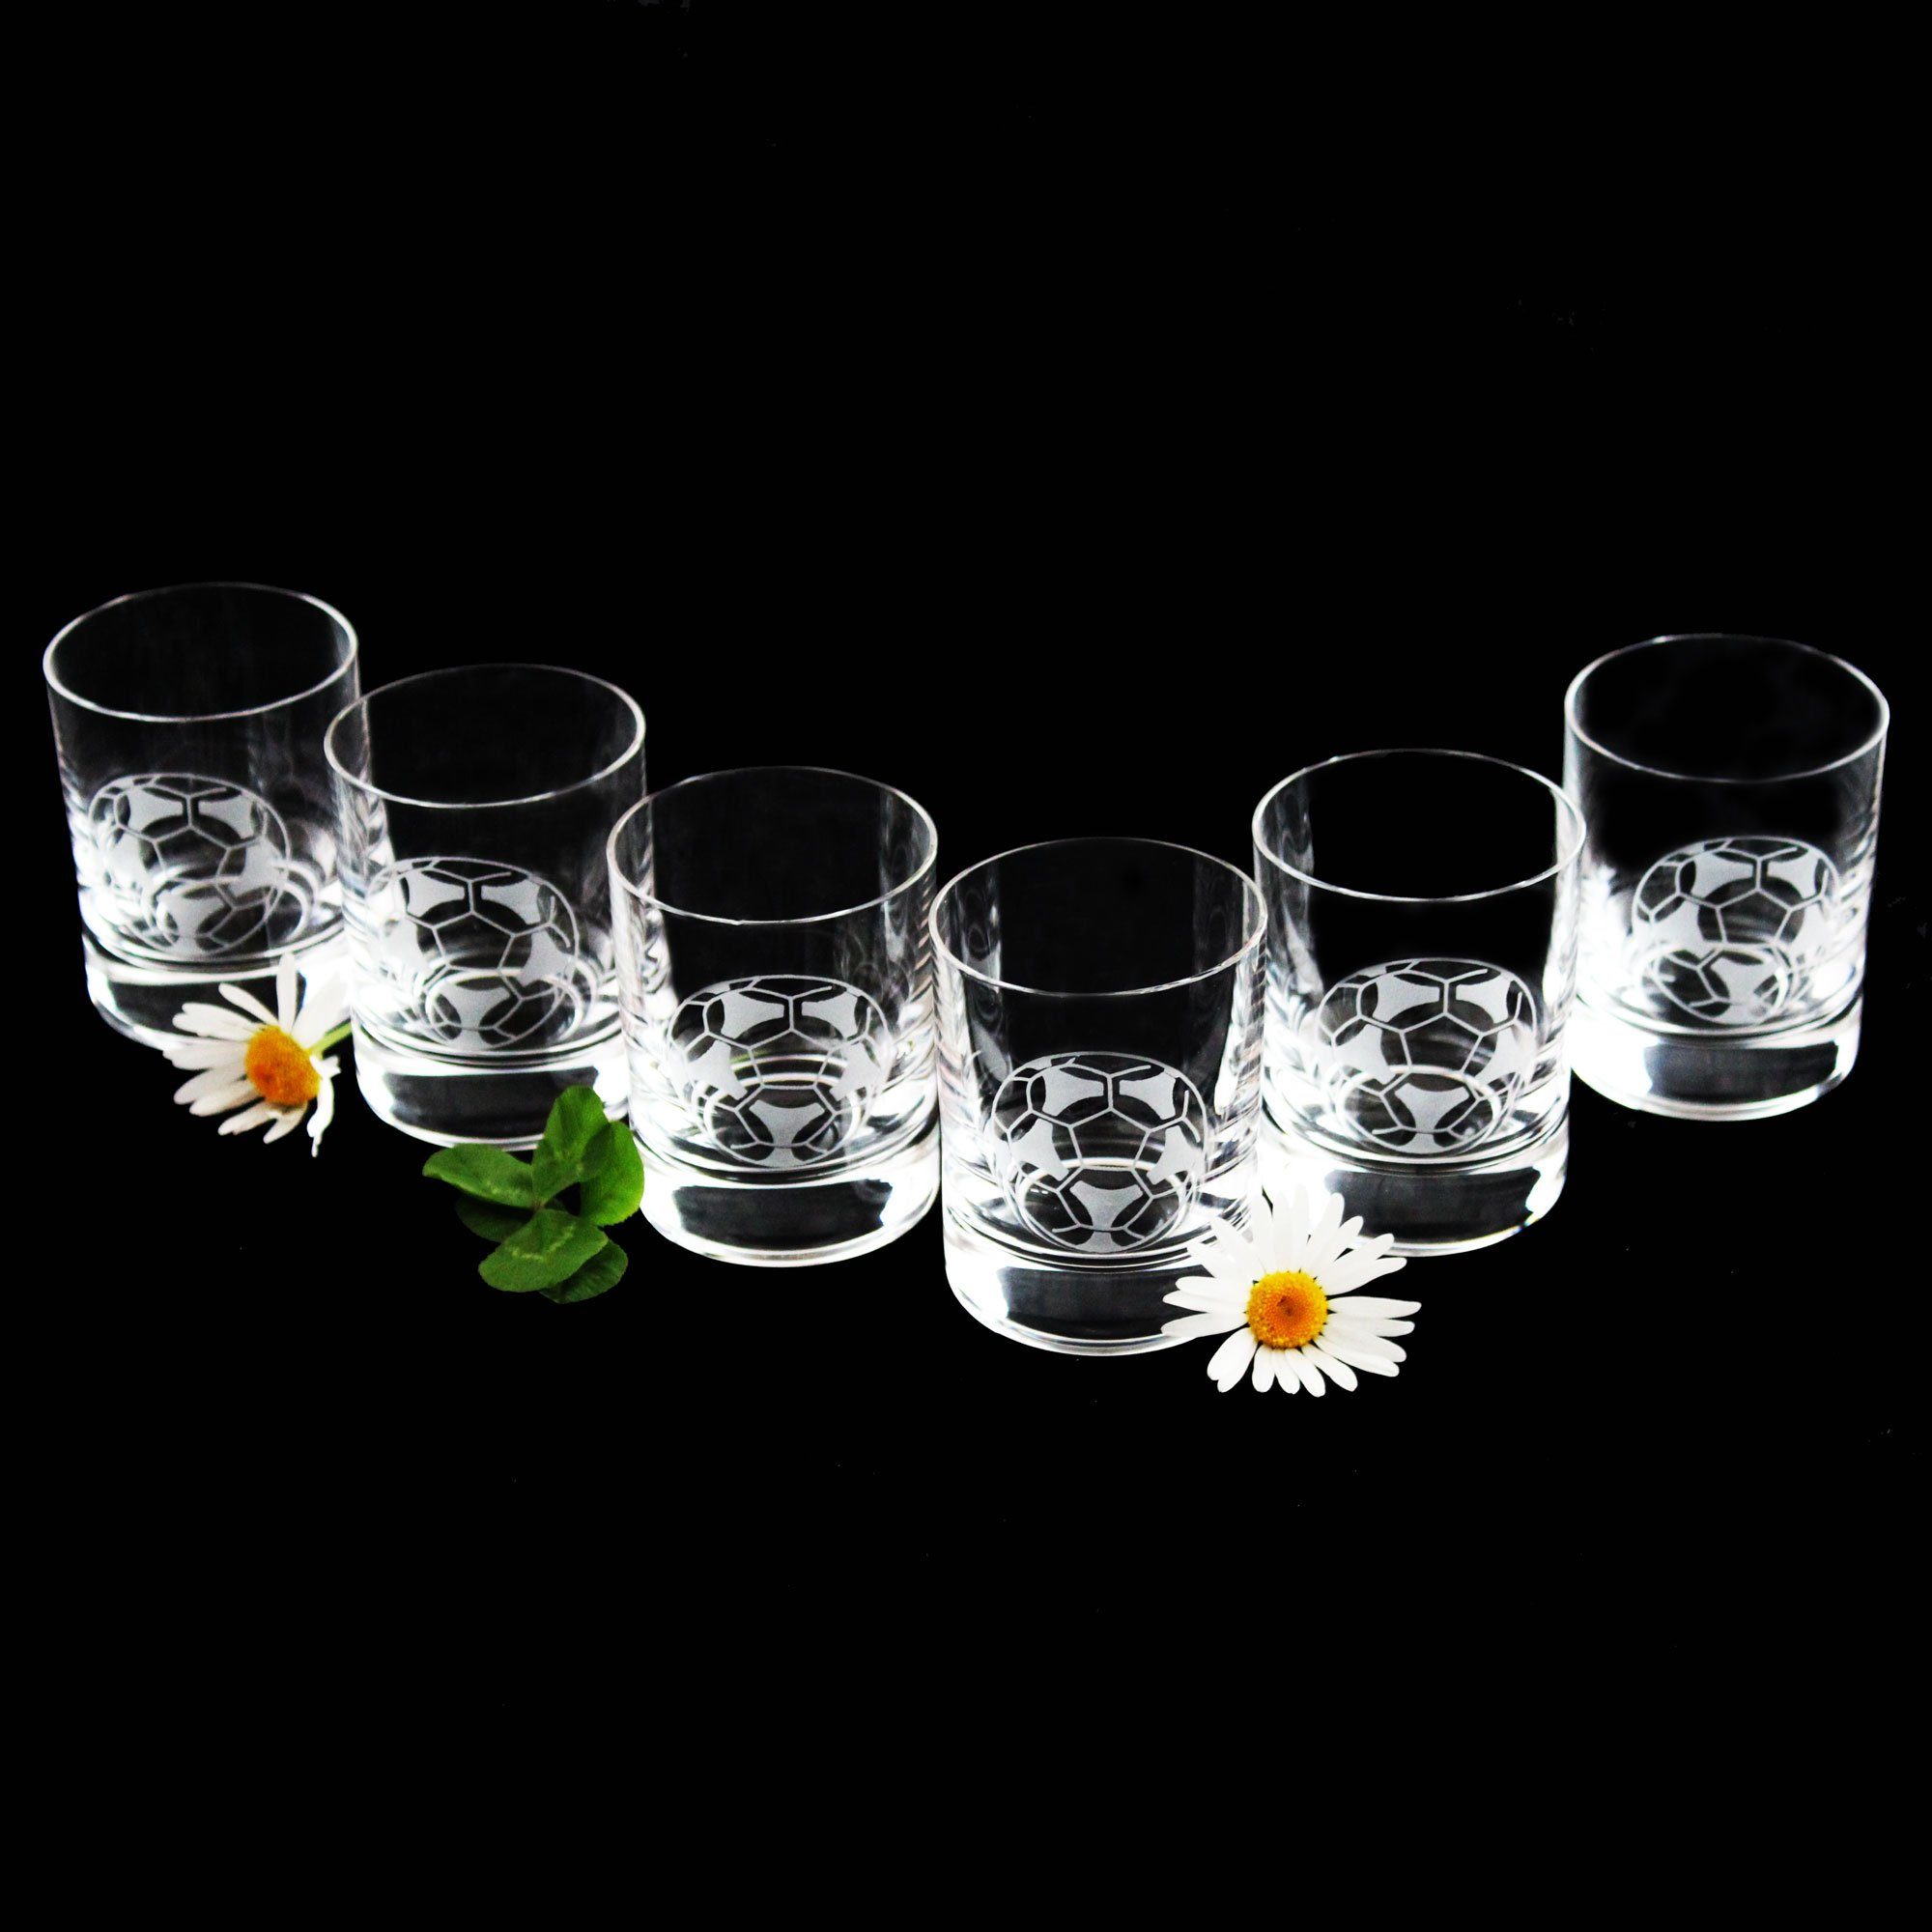 Schnapsglas Barline, Kristallglas, veredelt mit Gravur, 6-teilig, Inhalt 60 ml, Schnapsglas-Set